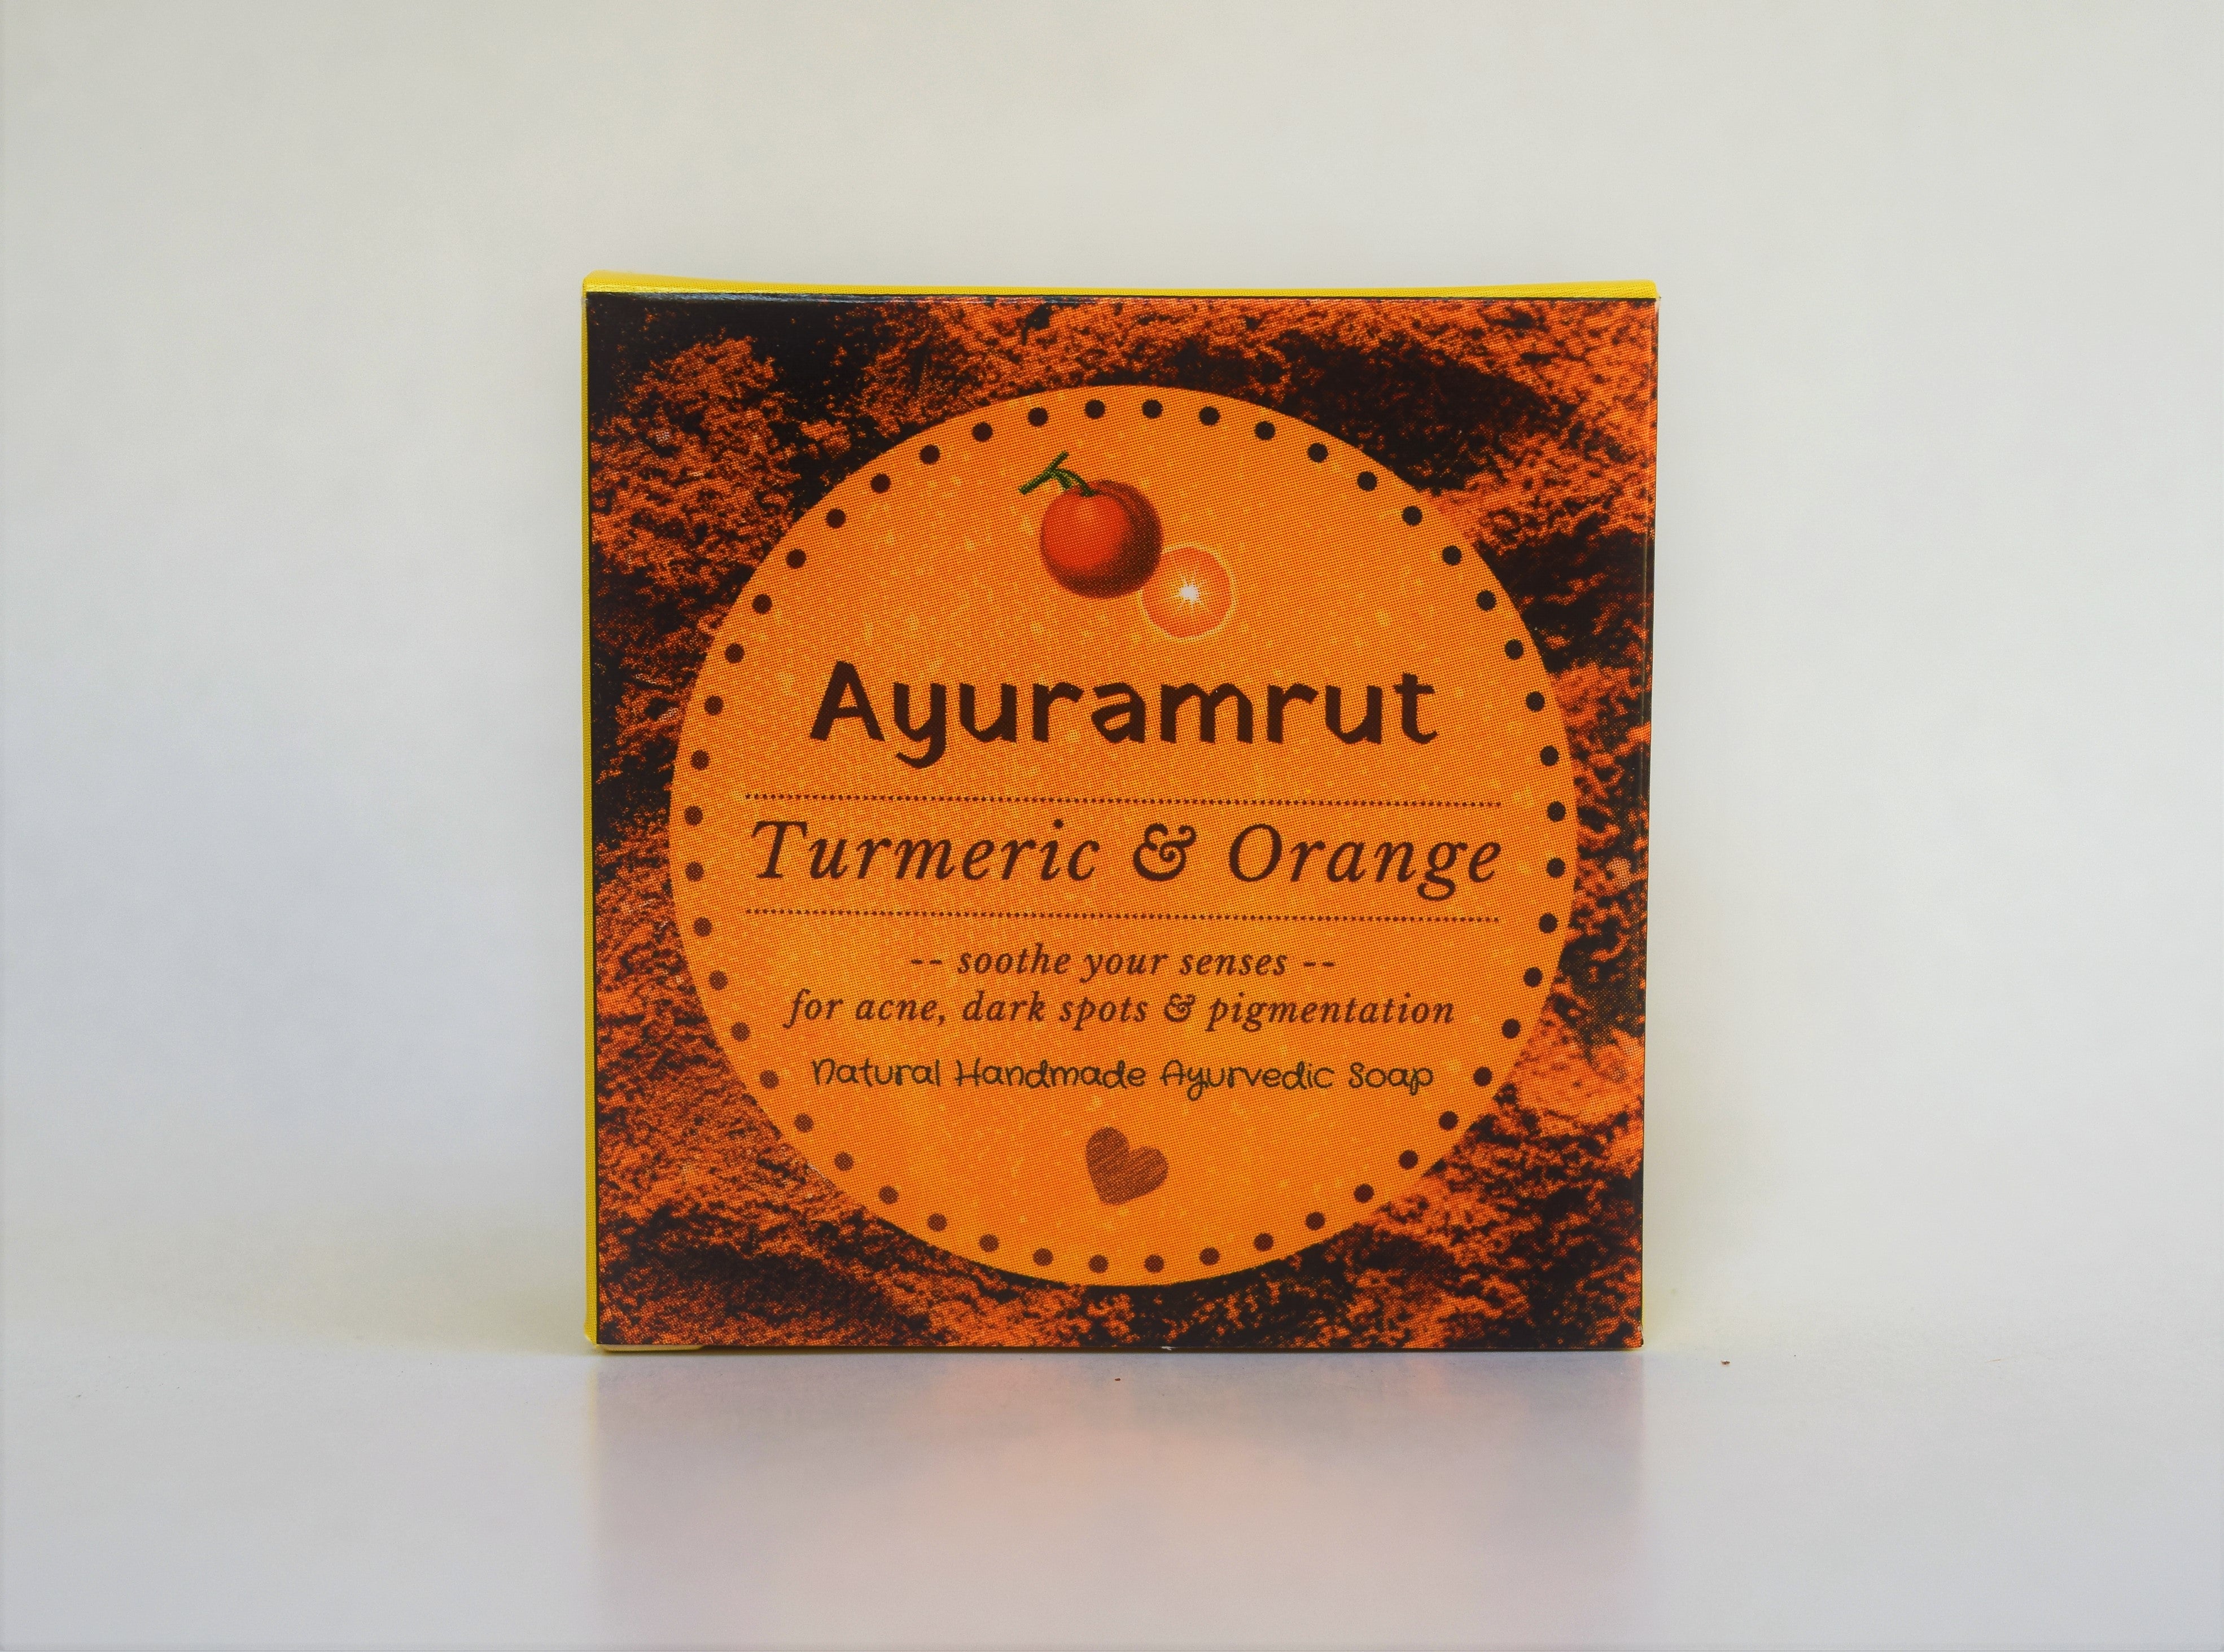 Ayuramrut Turmeric and Orange Natural Handmade Ayurvedic Soap (Pack of 4)